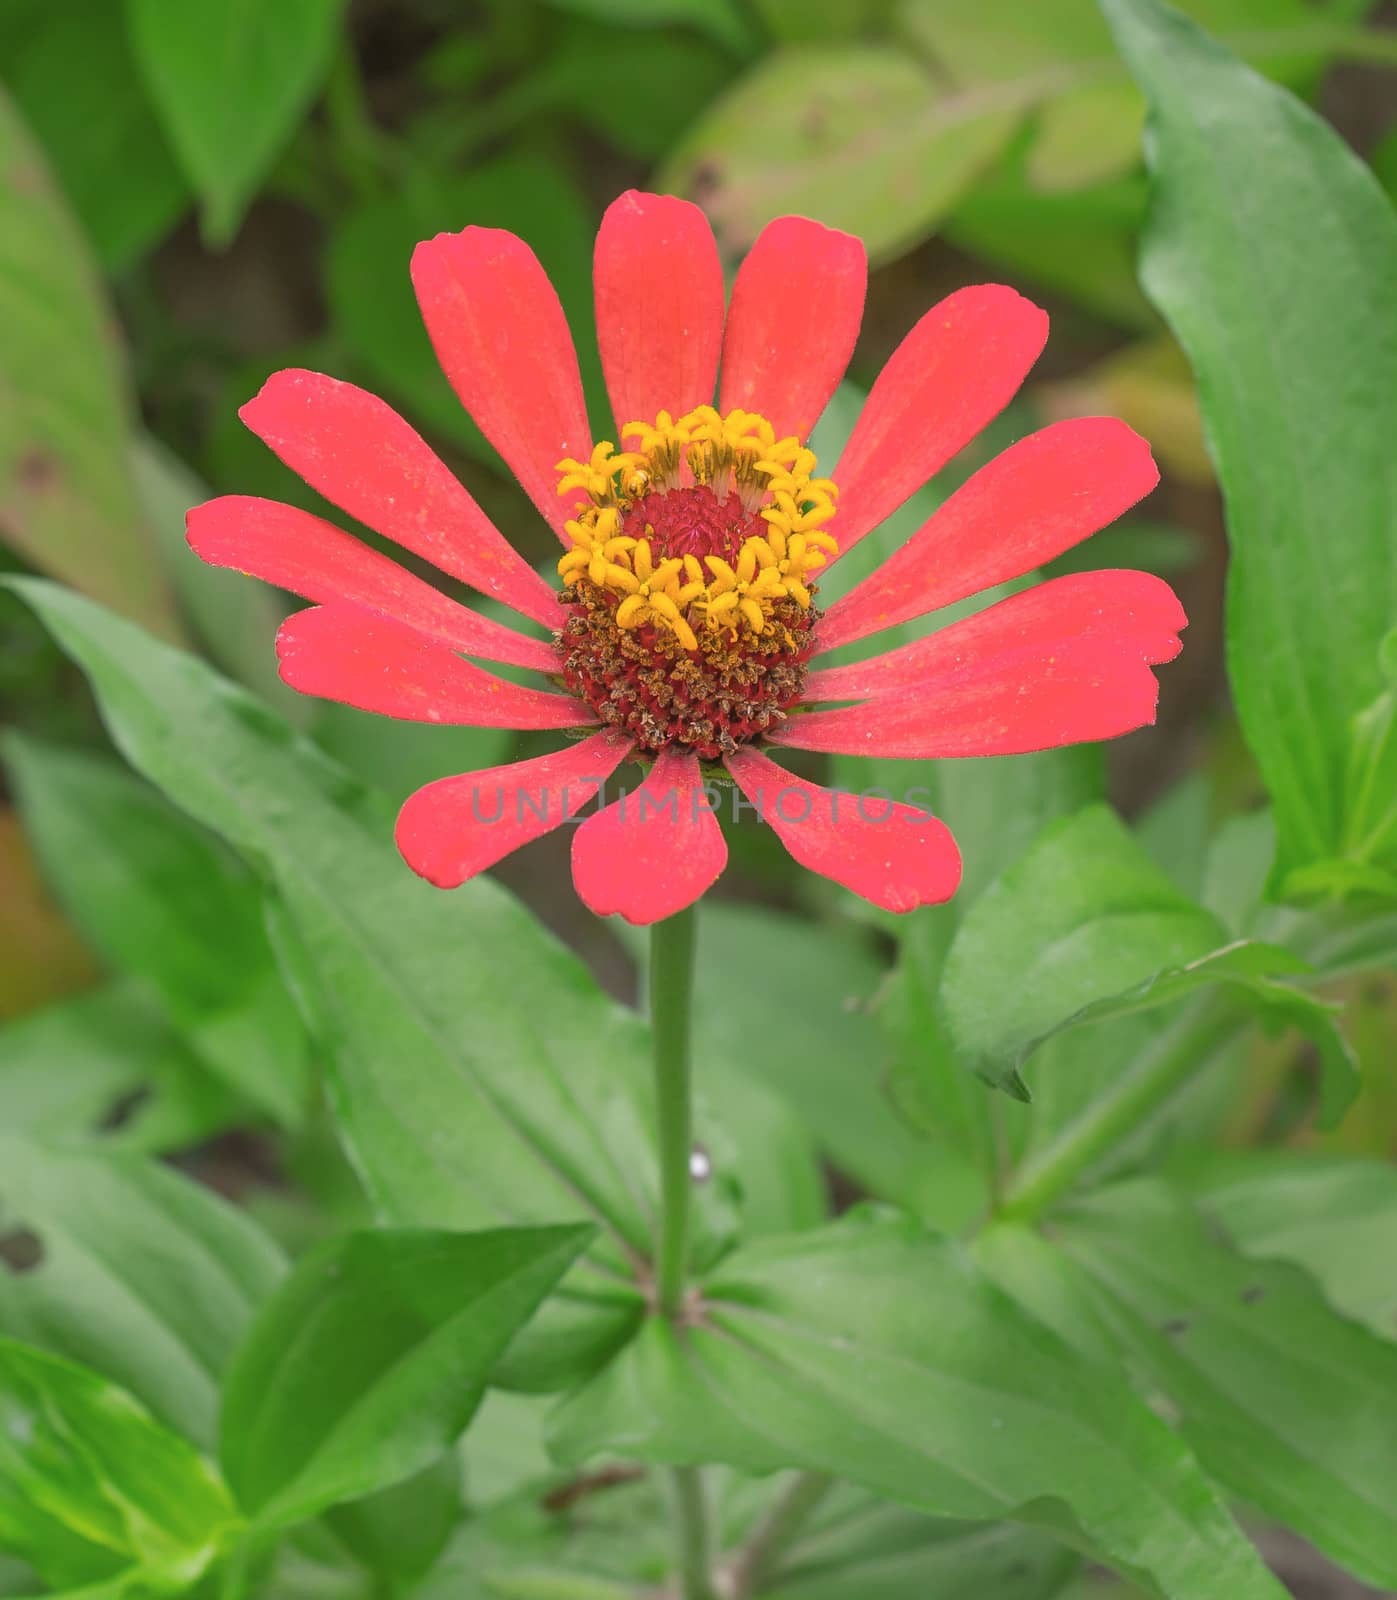 red Flower in the garden by sutipp11